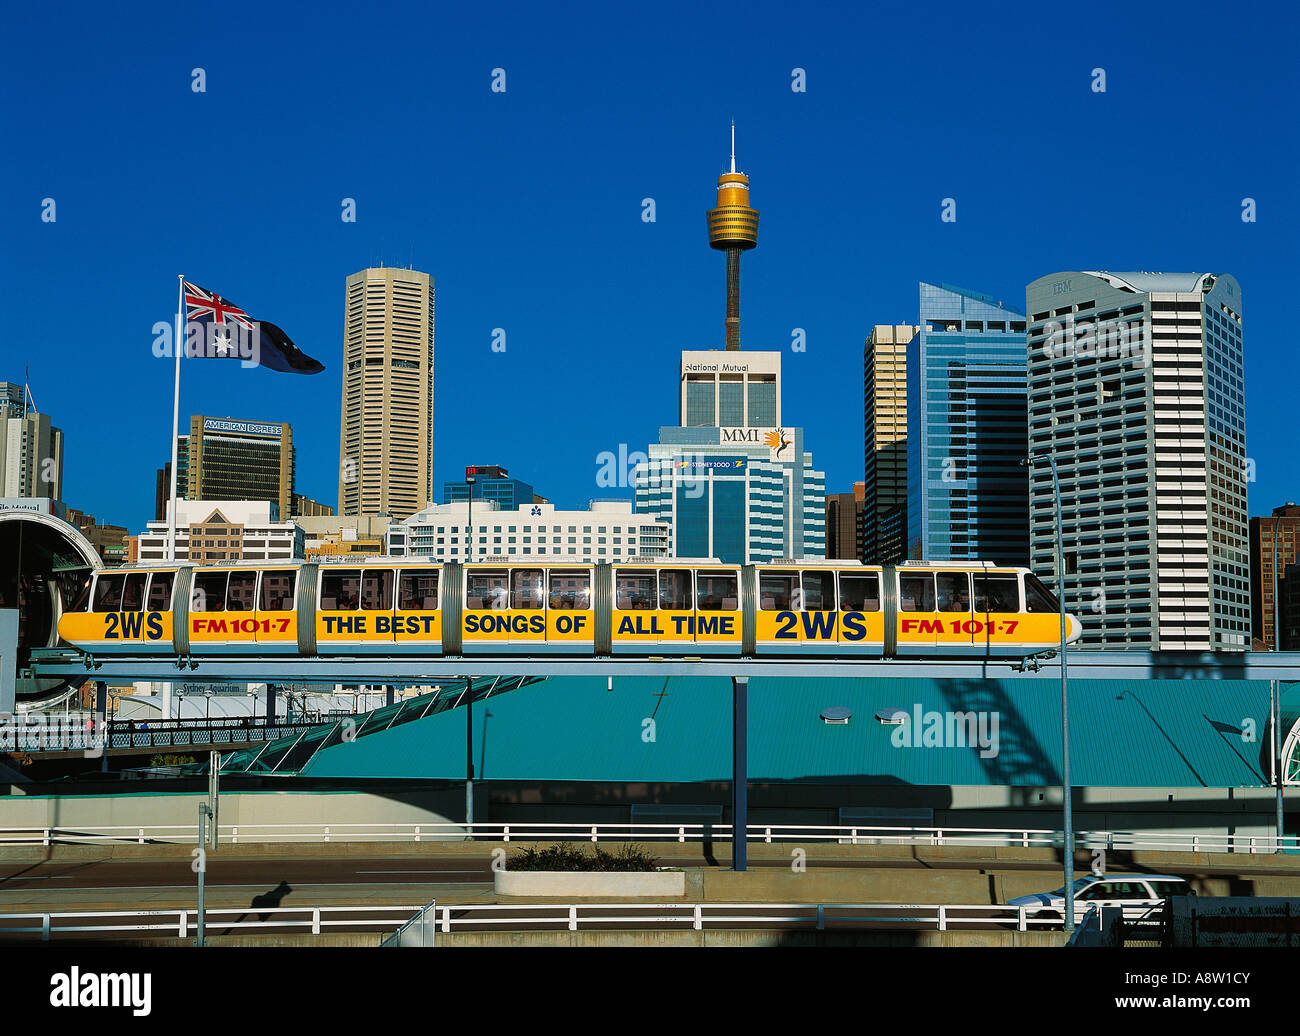 L'Australie. Nouvelle Galles du Sud. La ville de Sydney. Avis de Darling Harbour avec train monorail qui passe. Banque D'Images